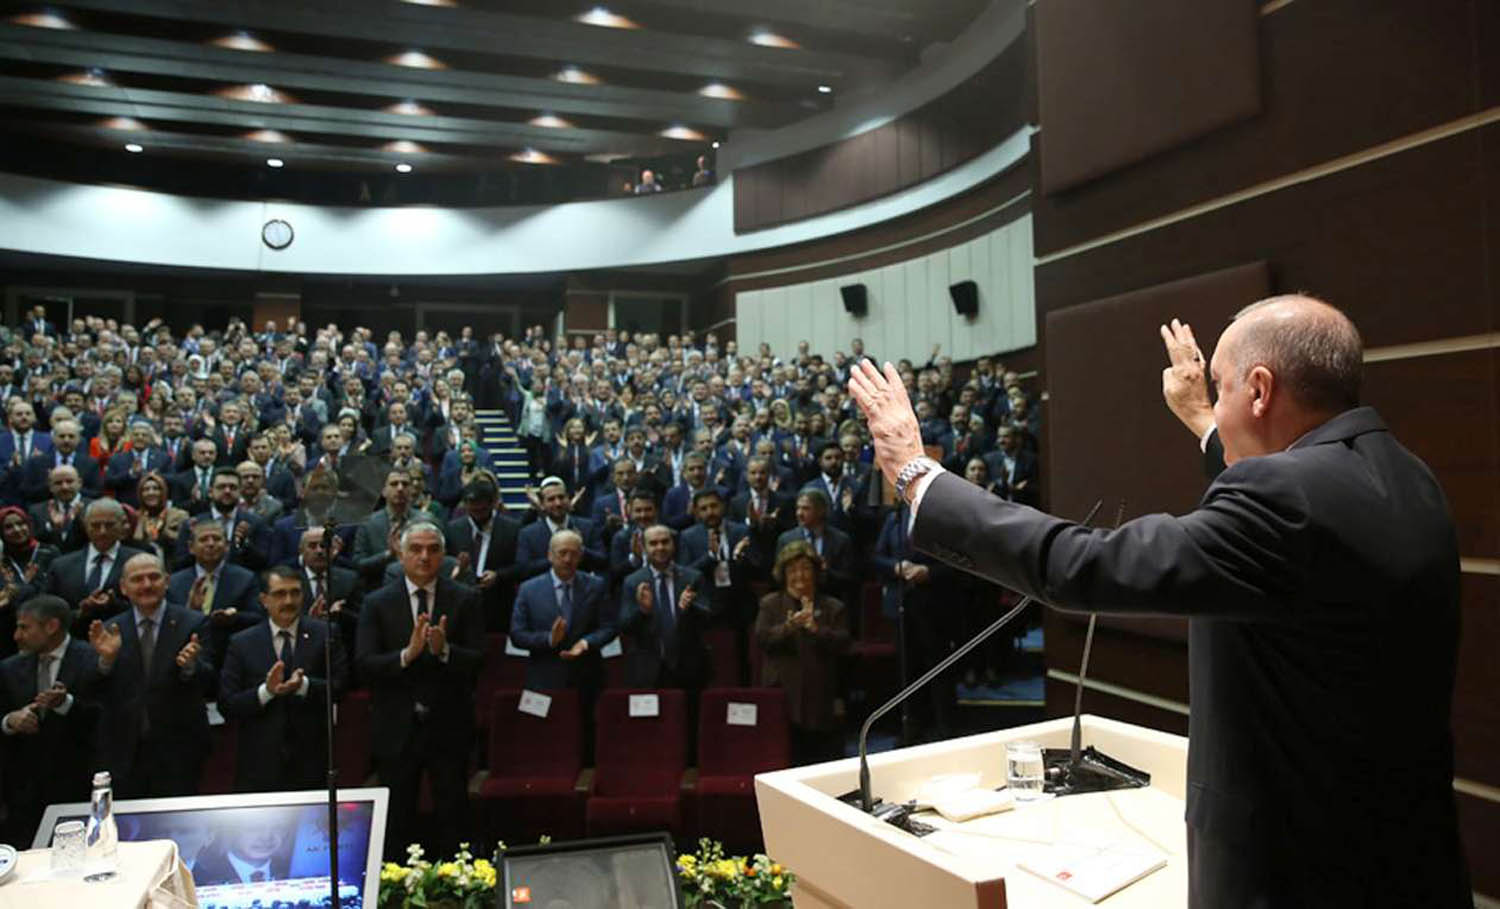 الرئيس التركي رجب طيب أردوغان يحيي اعضاء حزبه